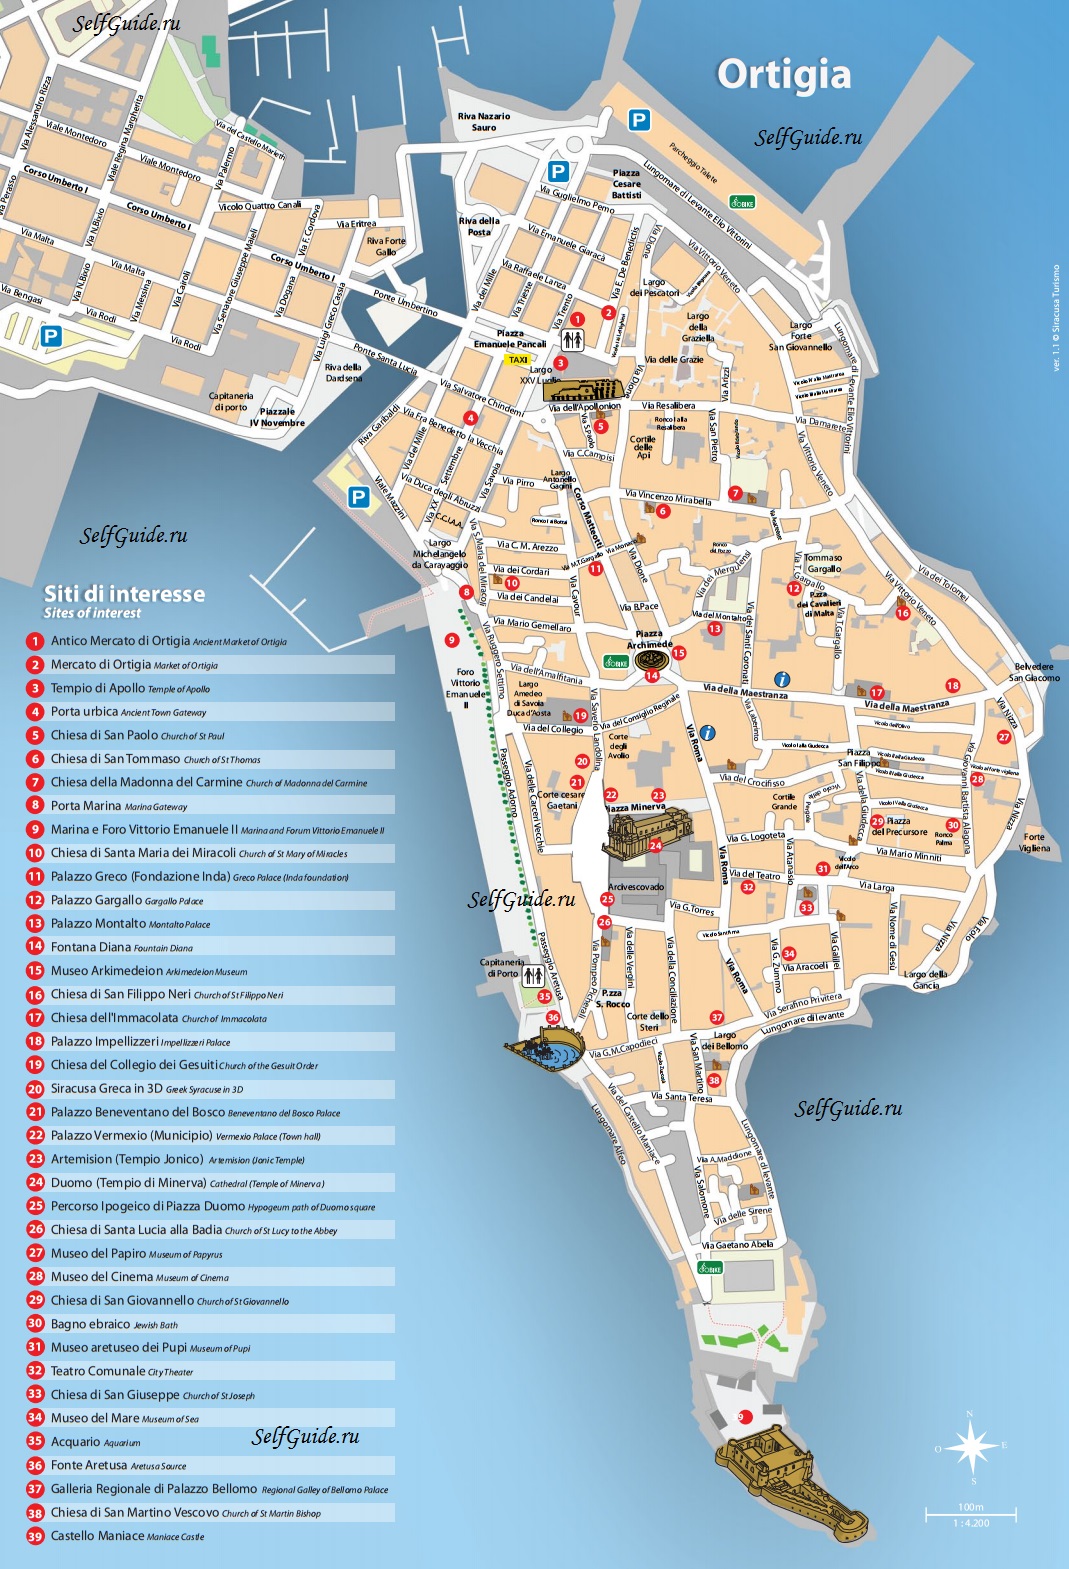 siracusa-map-ortigia Сиракузы (Siracusa), Сицилия, Италия - достопримечательности, карта города, туристический маршрут. Путеводитель по городу, Сицилии и Италии. Что посмотреть